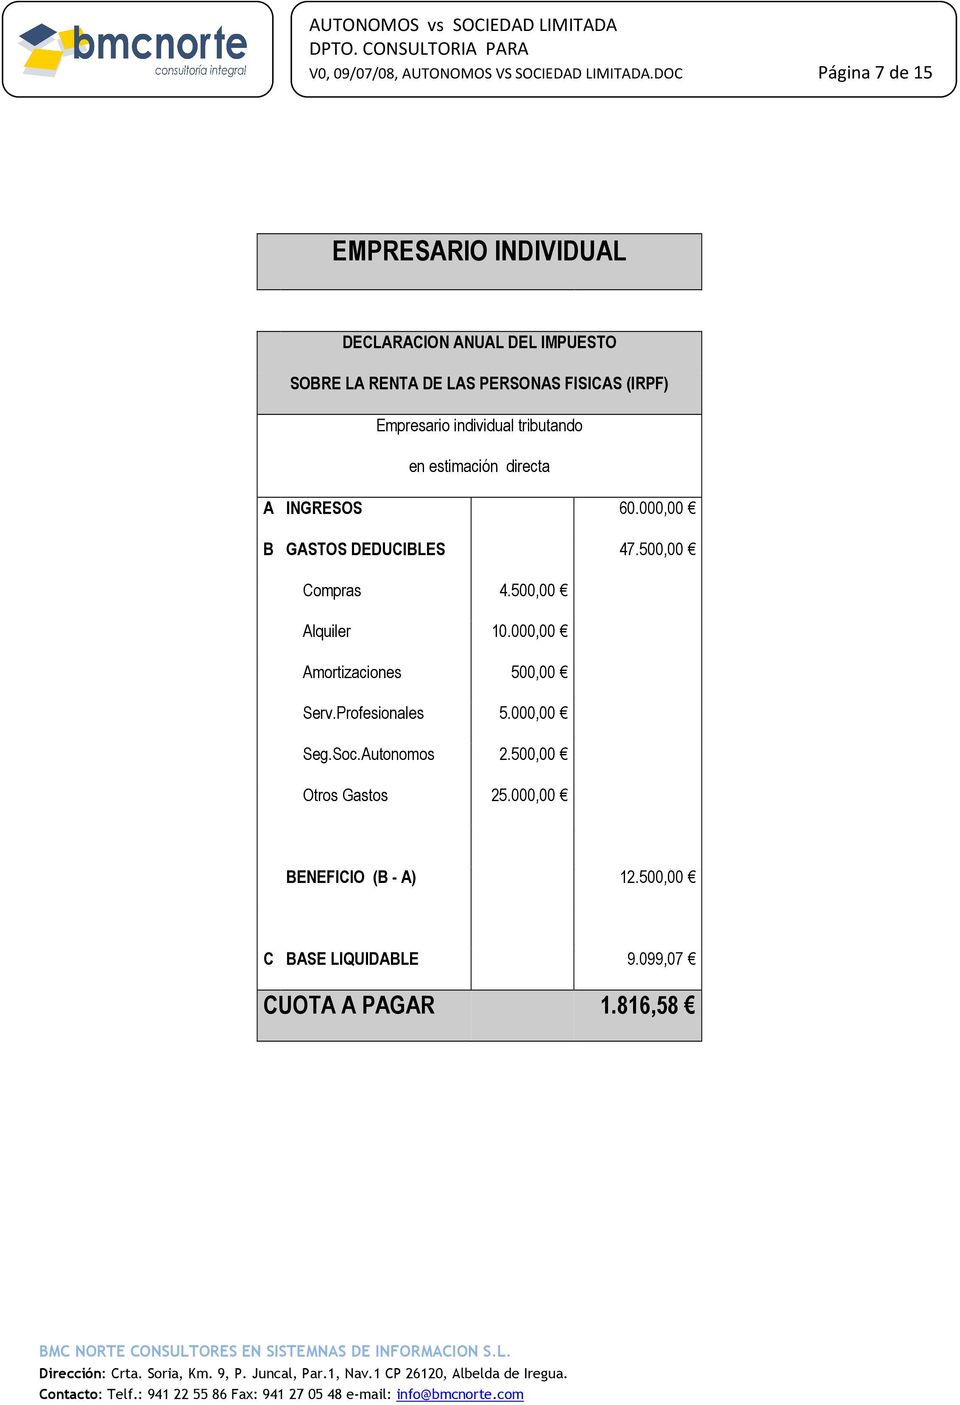 Empresario individual tributando en estimación directa A INGRESOS 60.000,00 B GASTOS DEDUCIBLES 47.500,00 Compras 4.